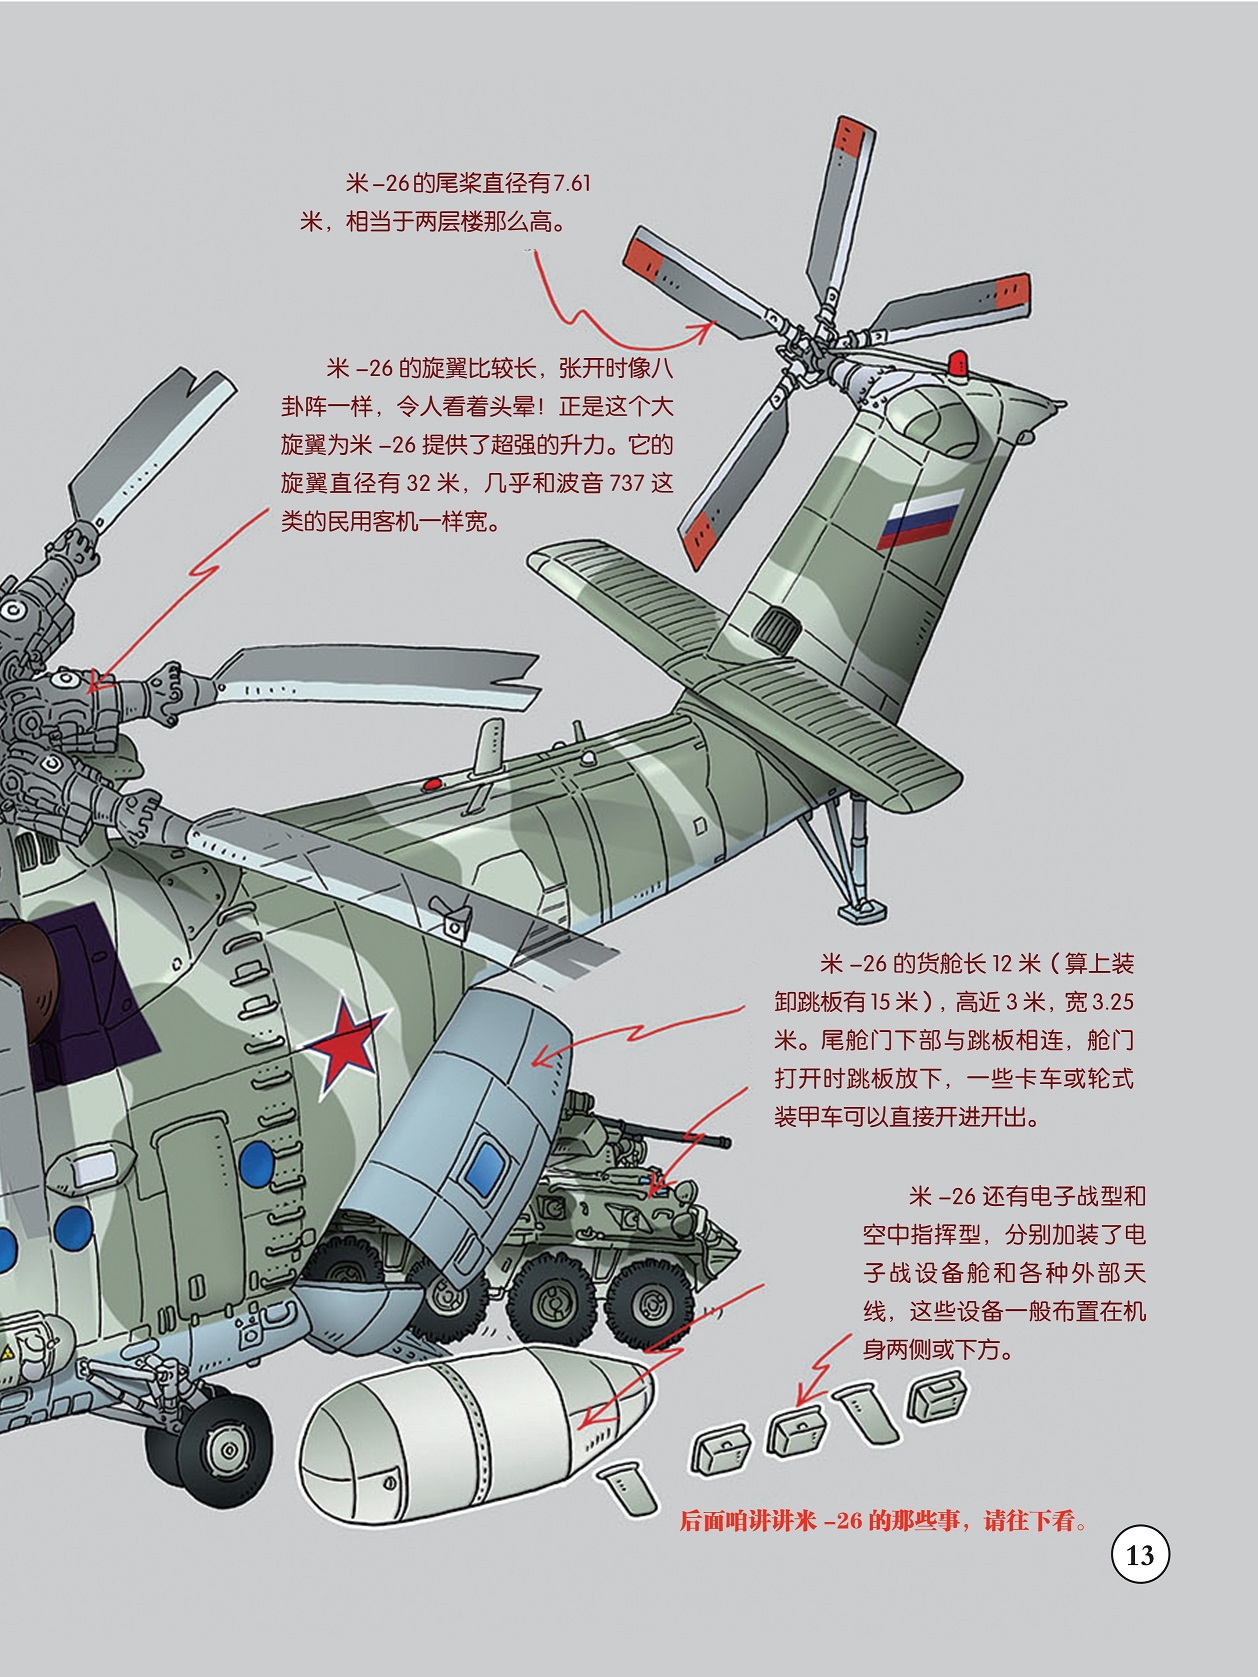 米-26的旋翼比较长,米-26有电子战型和空中指挥型